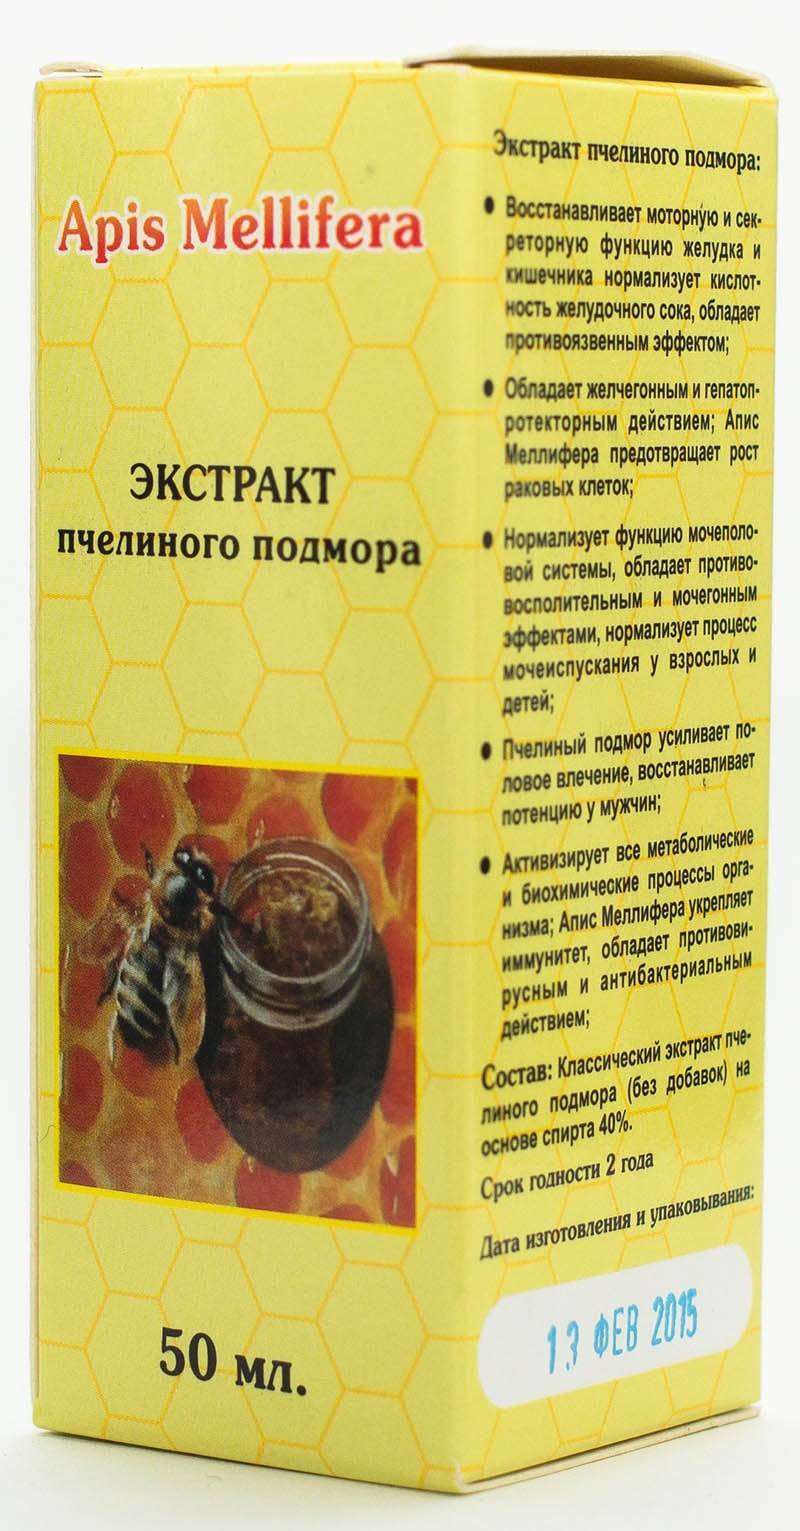 Подмор пчелиный — польза и вред для мужчин и женщин, применение и отзывы